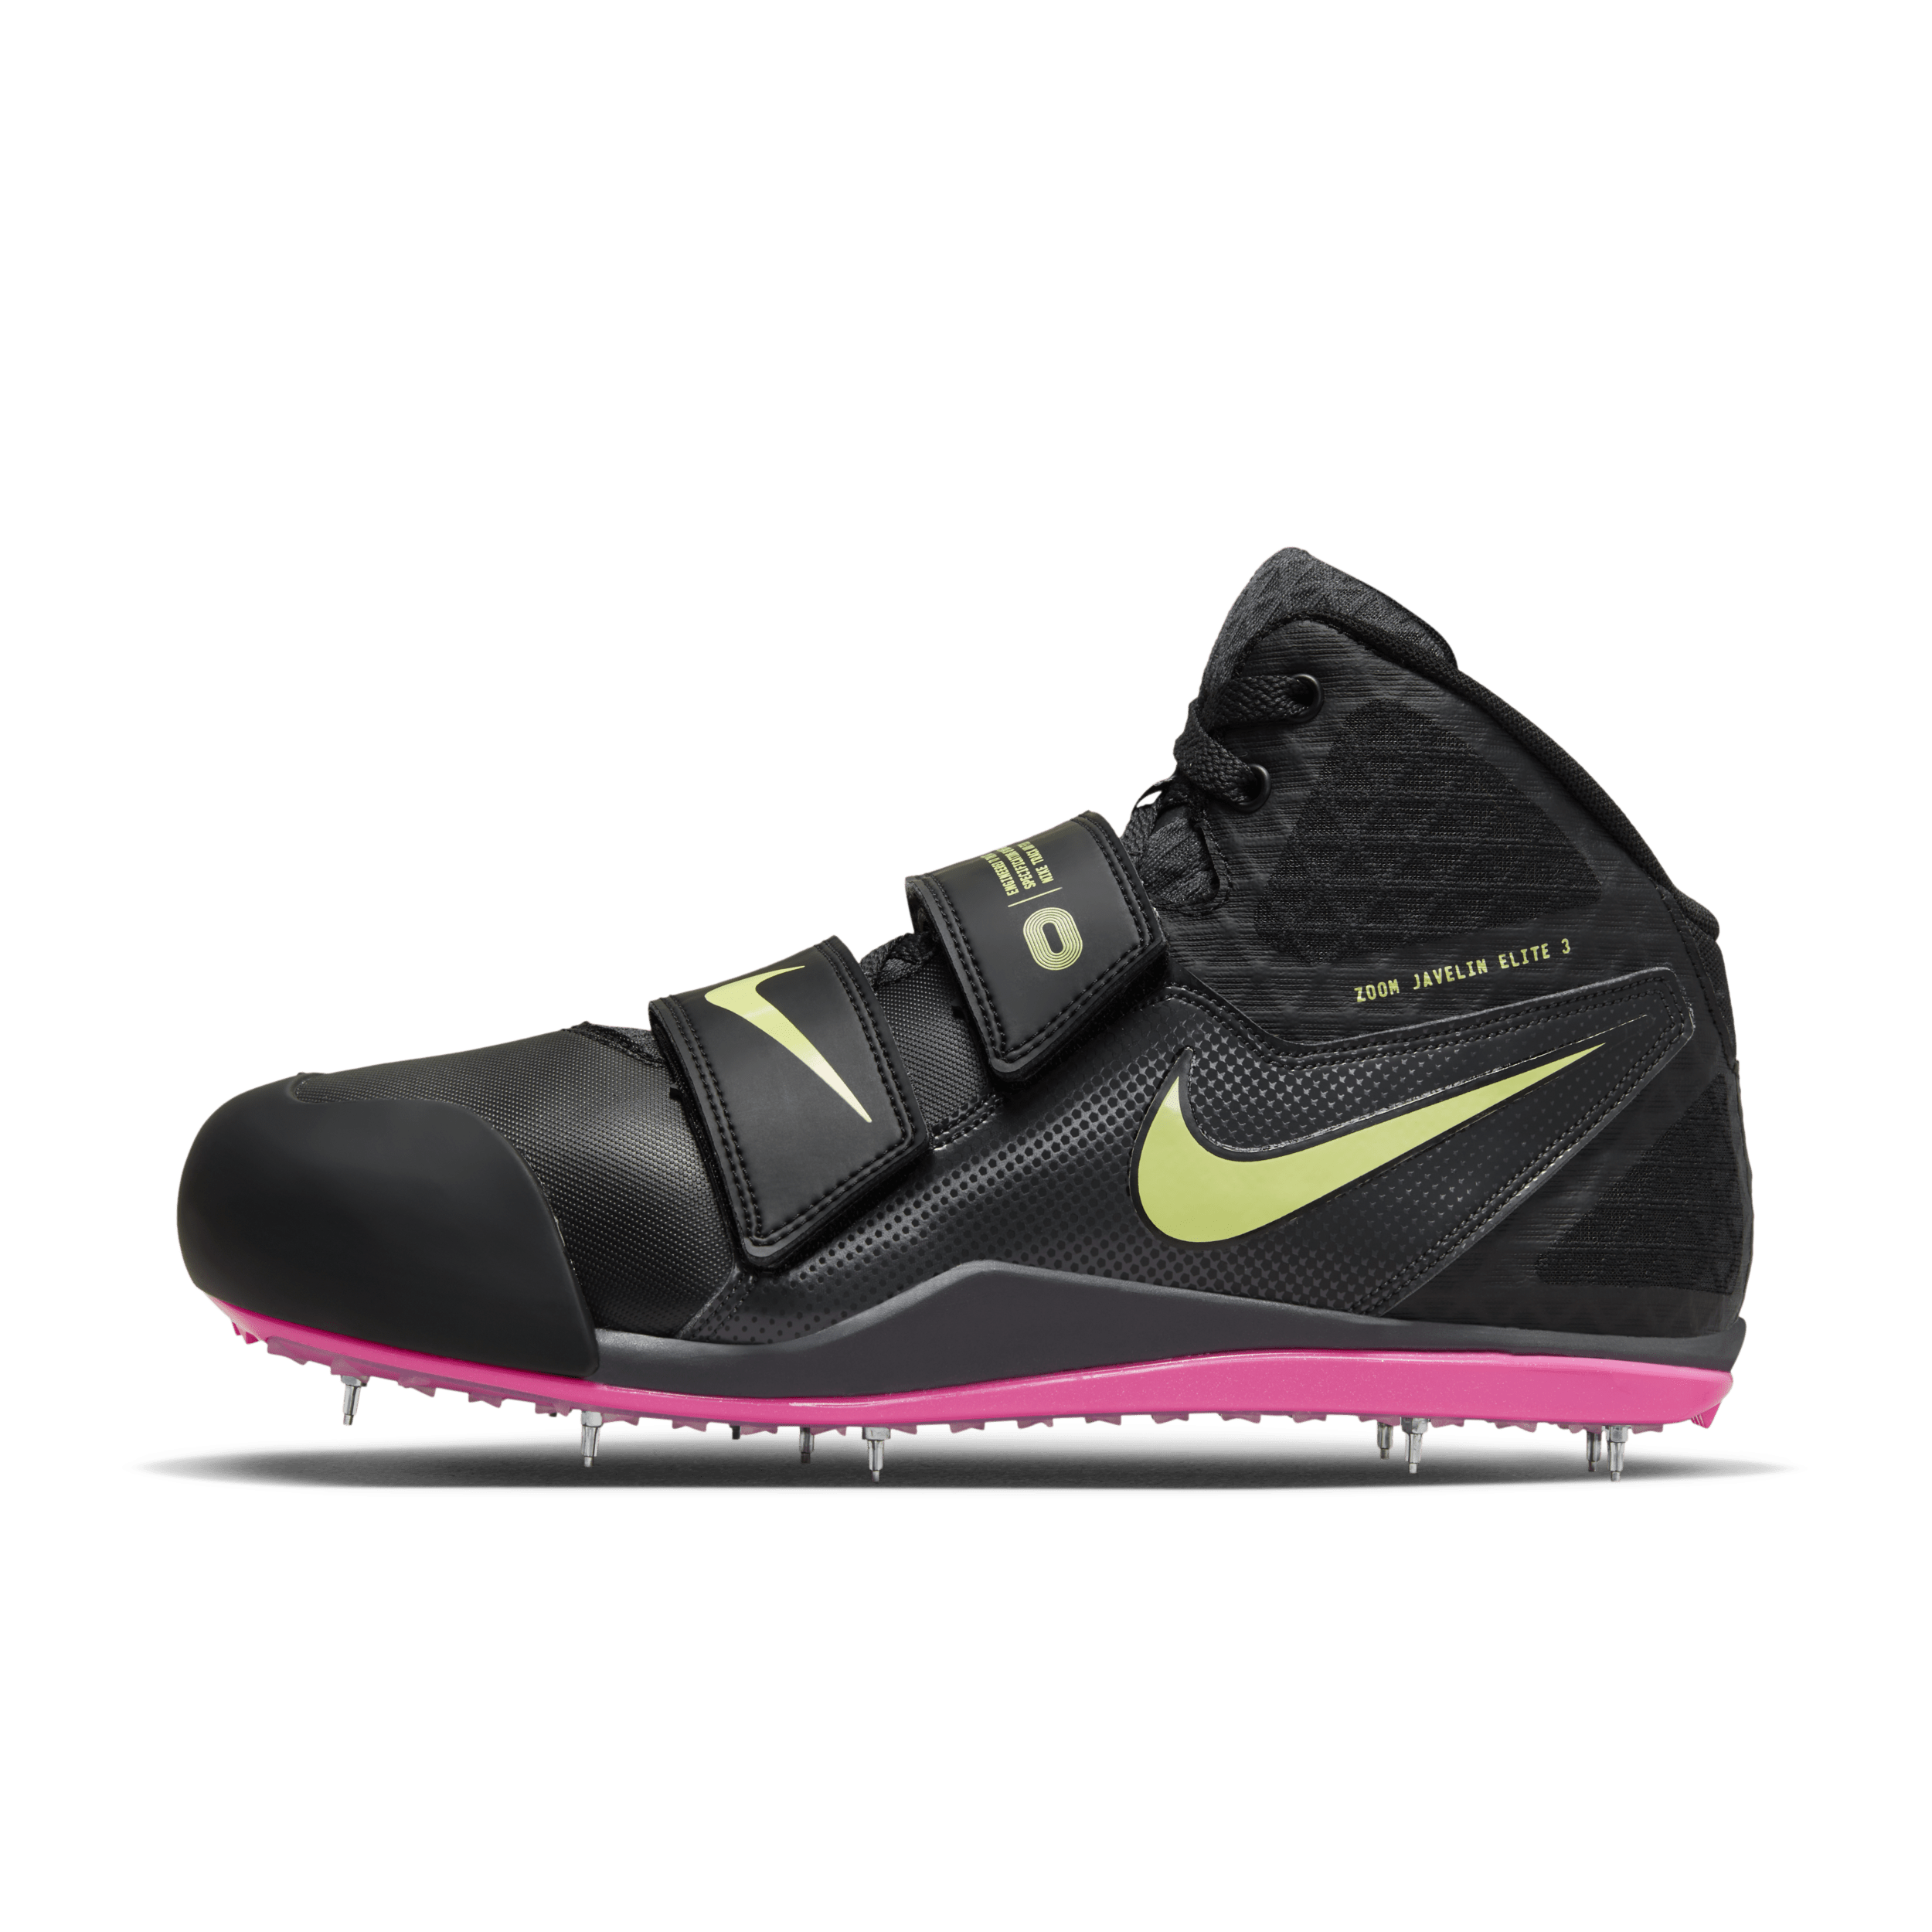 Nike Zoom Javelin Elite 3 Zapatillas de lanzamiento con clavos Track & Field - Negro